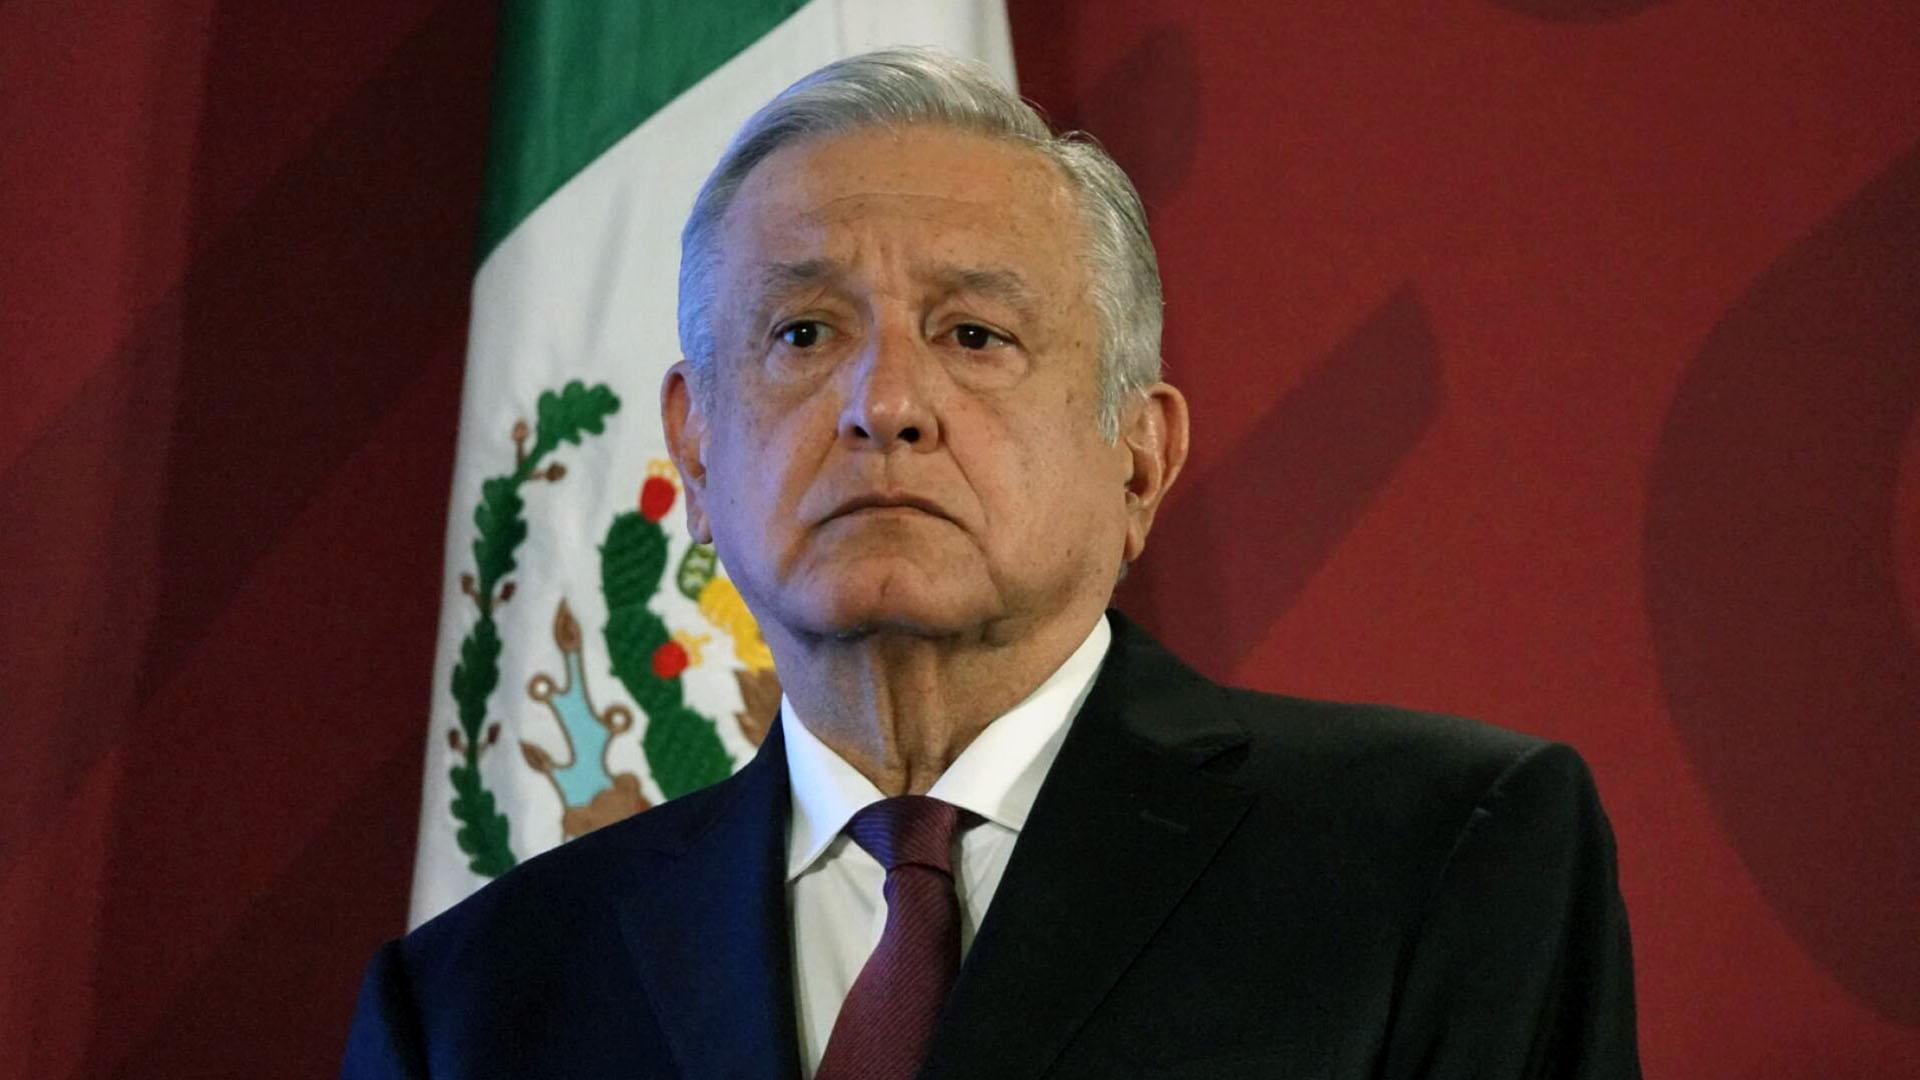 La decisión del juez frenó parcialmente la política energética del gobierno de López Obrador (Foto: Andrea Murcia/ Cuartoscuro)